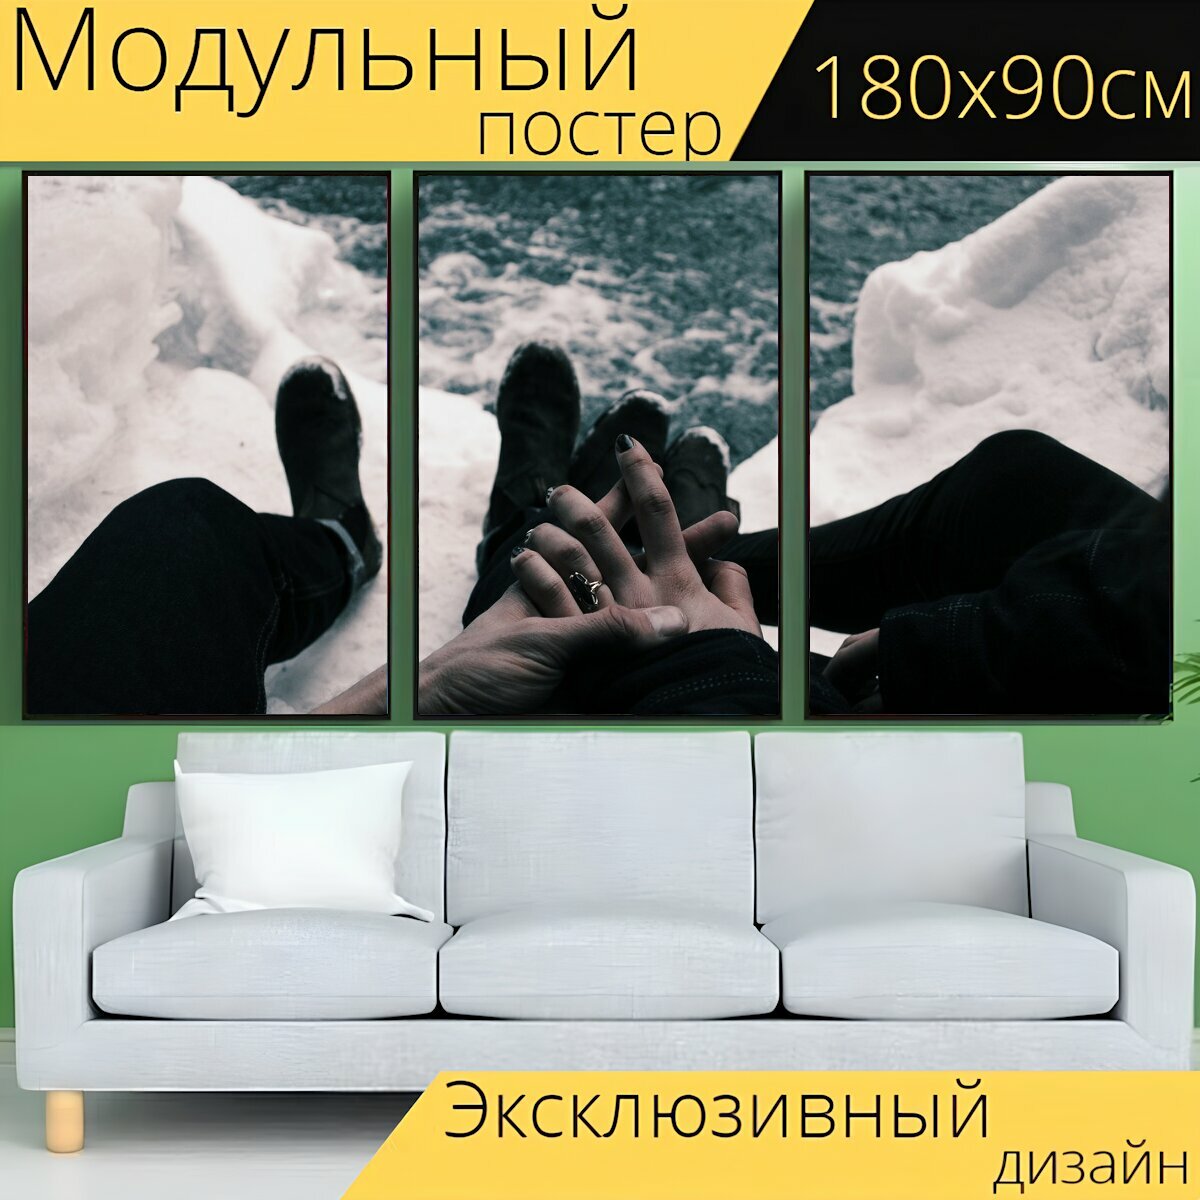 Модульный постер "Руки, холдинг руки, пара" 180 x 90 см. для интерьера